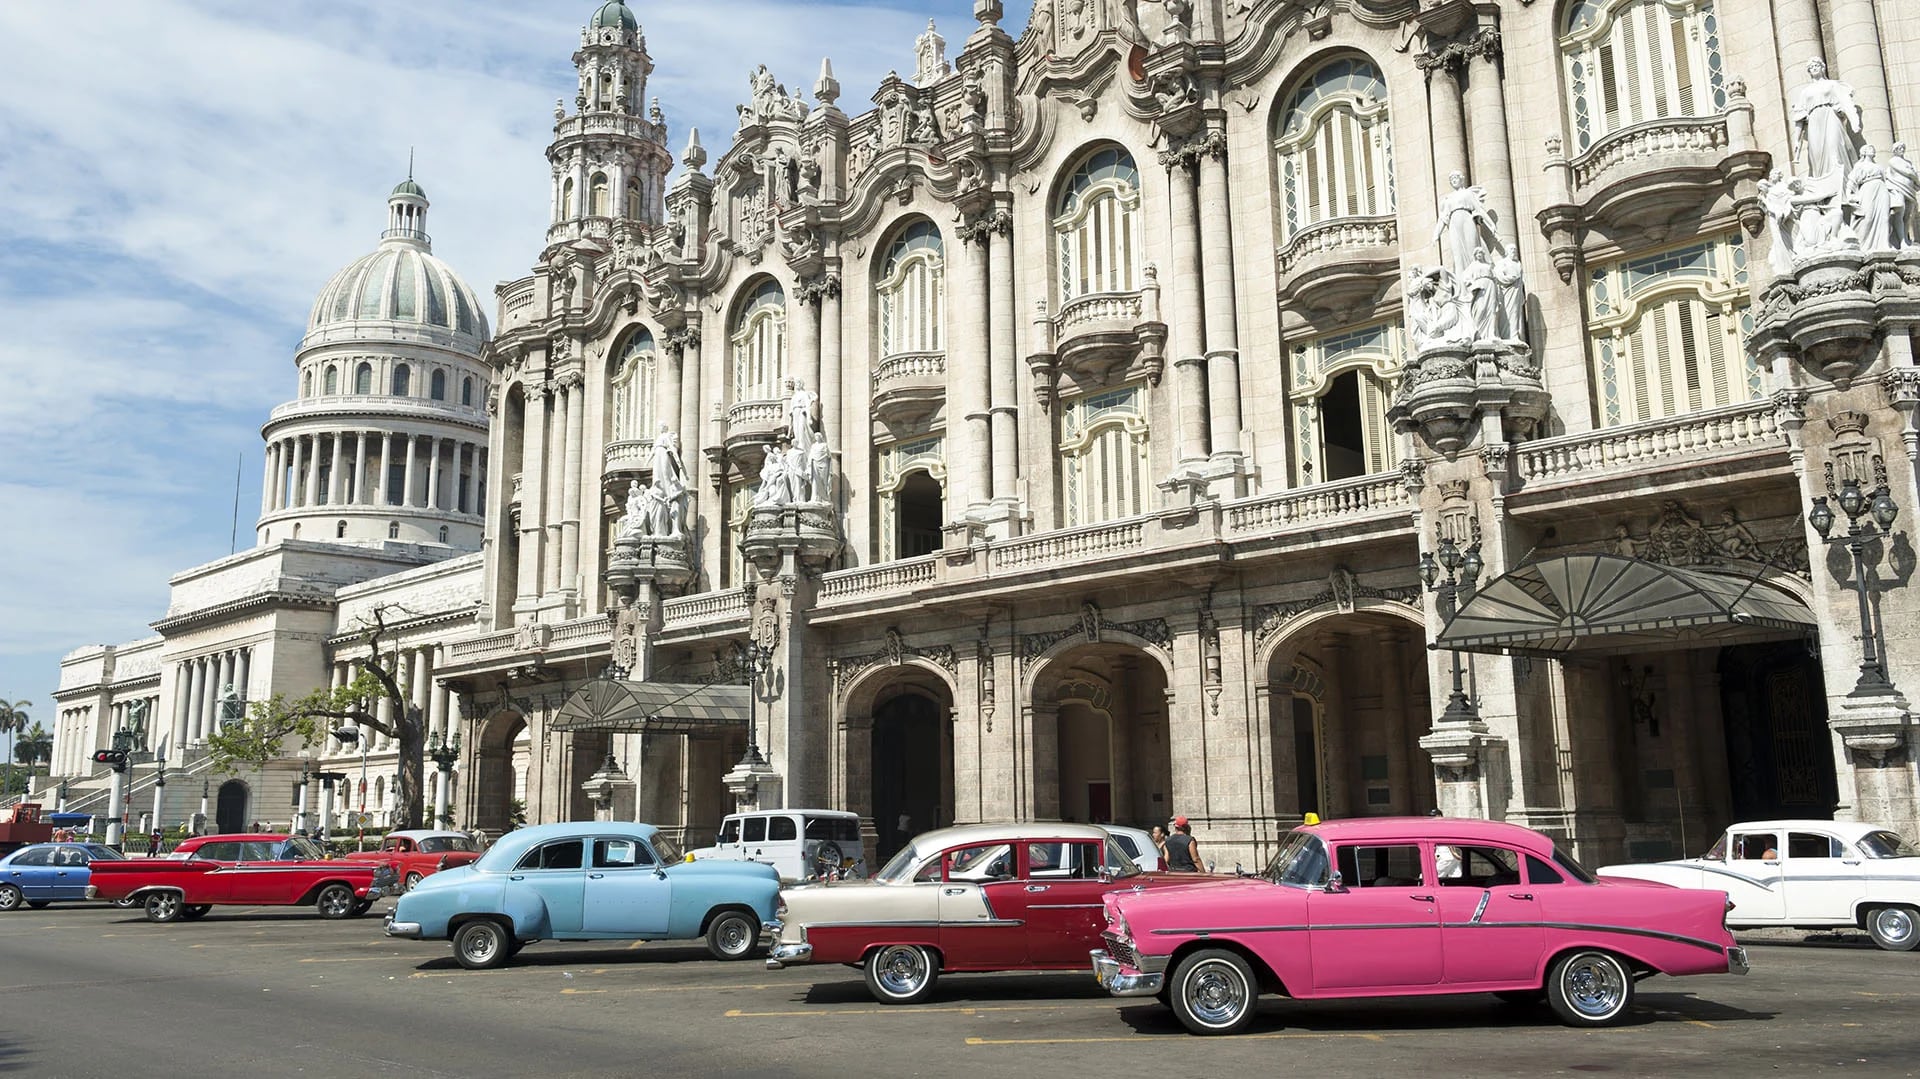 Sus coches clásicos antiguos de brillantes colores hacen de La Habana un lugar digno de ser maravilla